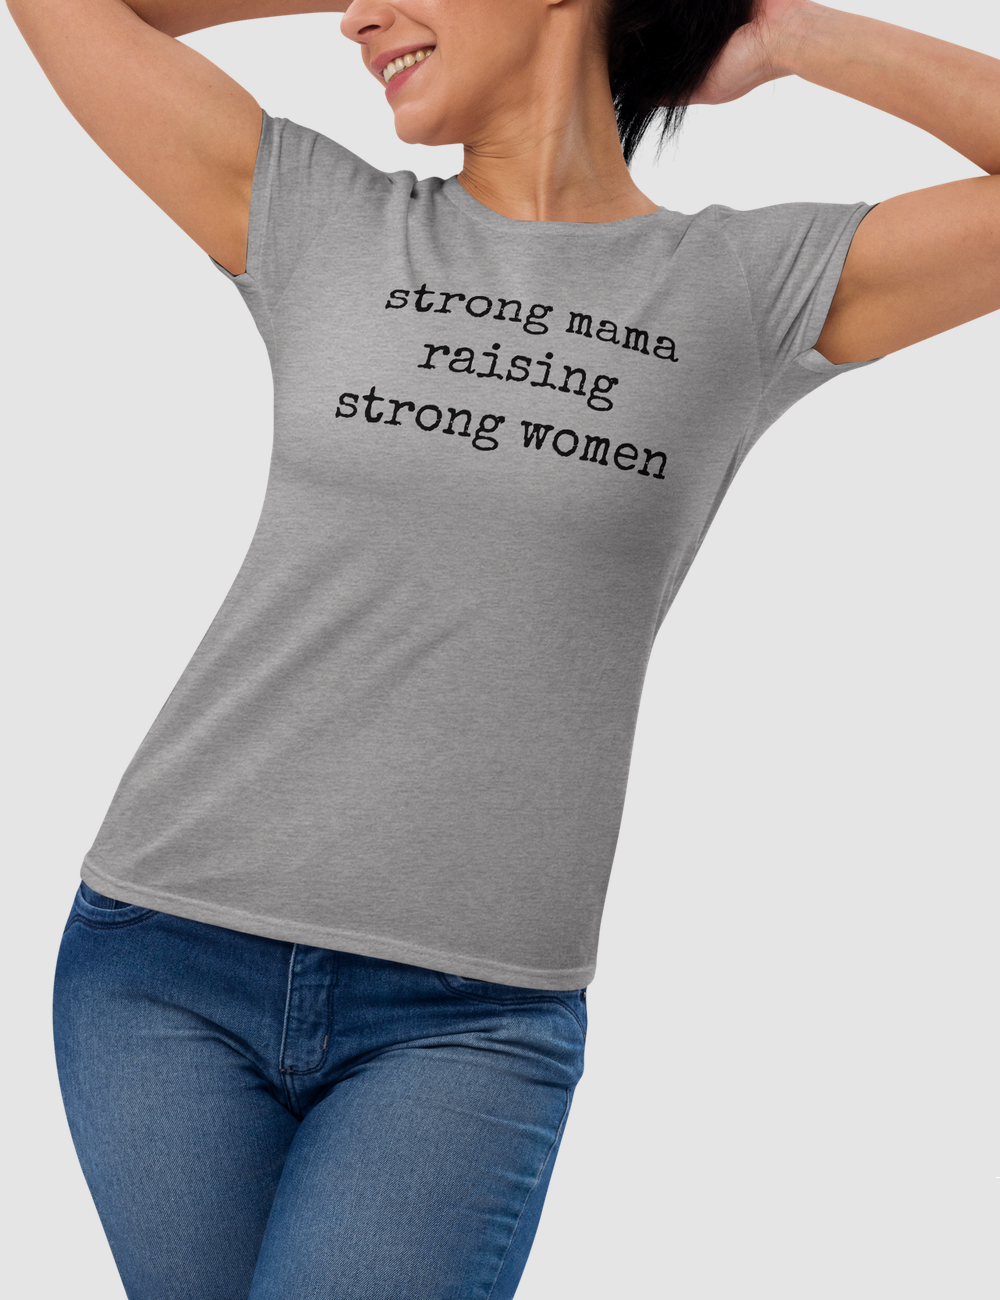 Strong Mama Raising Strong Women Women's Classic T-Shirt OniTakai